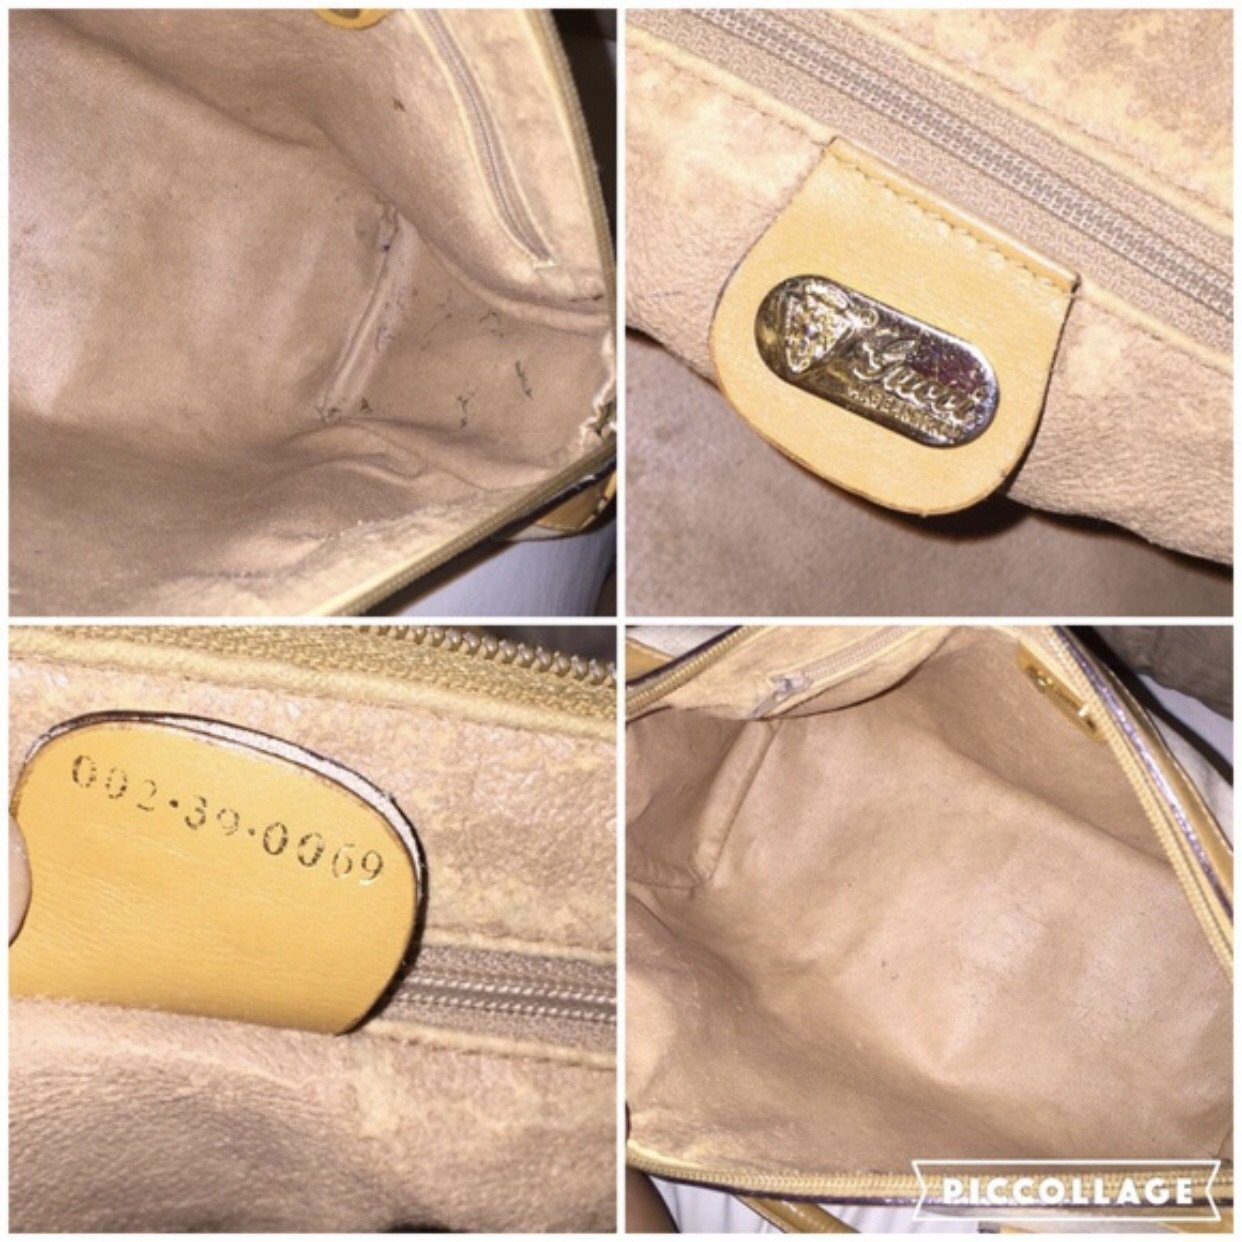 Vintage Authentic GUCCI SPEEDY Brown Monogram Handbag Purse 